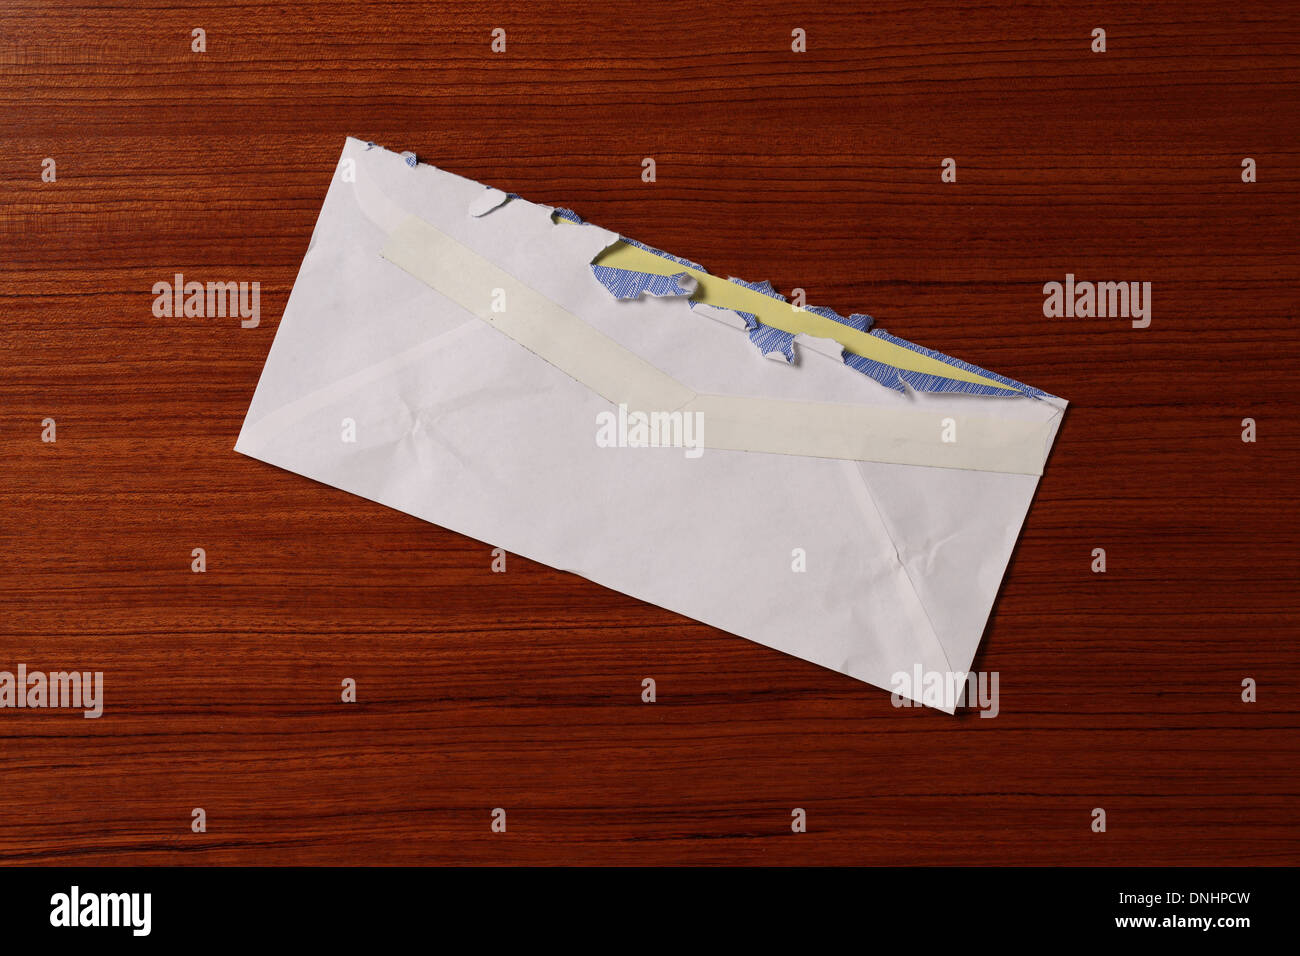 Une enveloppe d'affranchissement du courrier de l'air un peu défraîchi et déchiré sur une surface en bois. Banque D'Images